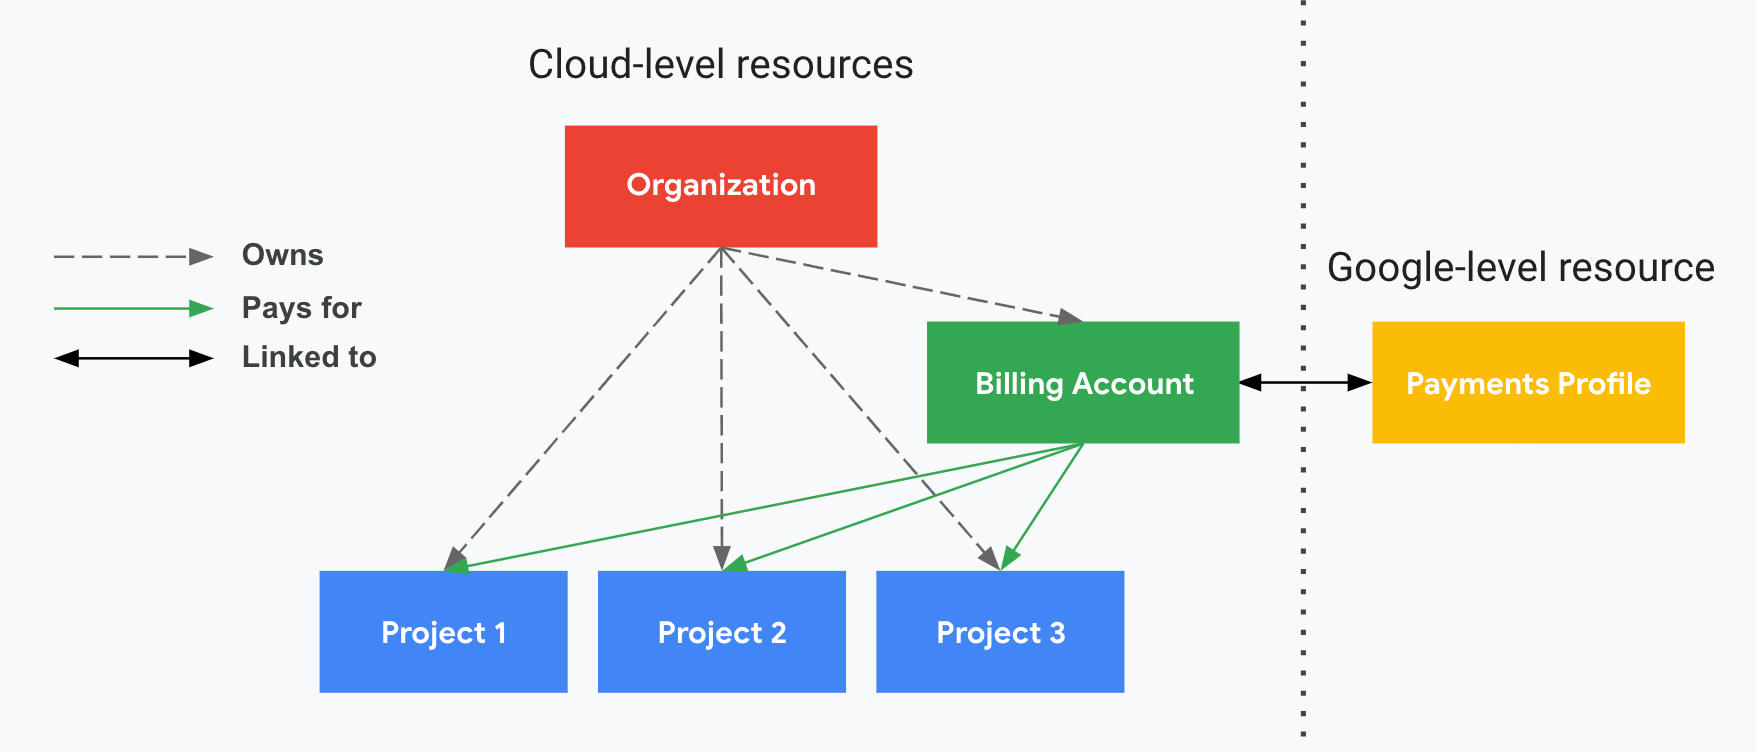 Diagramm: Beschreibt, wie sich Projekte auf Ihr Cloud-Rechnungskonto, die Organisation und Ihr Zahlungsprofil beziehen. Auf der einen Seite werden Ihre Ressourcen auf Cloud-Ebene angezeigt (Cloud-Rechnungskonto und zugehörige Projekte) und auf der anderen Seite Ihre Ressource auf Google-Ebene (Zahlungsprofil), die durch eine gepunktete vertikale Linie getrennt ist. Ihre Projekte werden über das Cloud-Rechnungskonto bezahlt, das mit Ihrem Zahlungsprofil verknüpft ist. Die Organisation steuert die Inhaberschaft mithilfe von Cloud IAM.